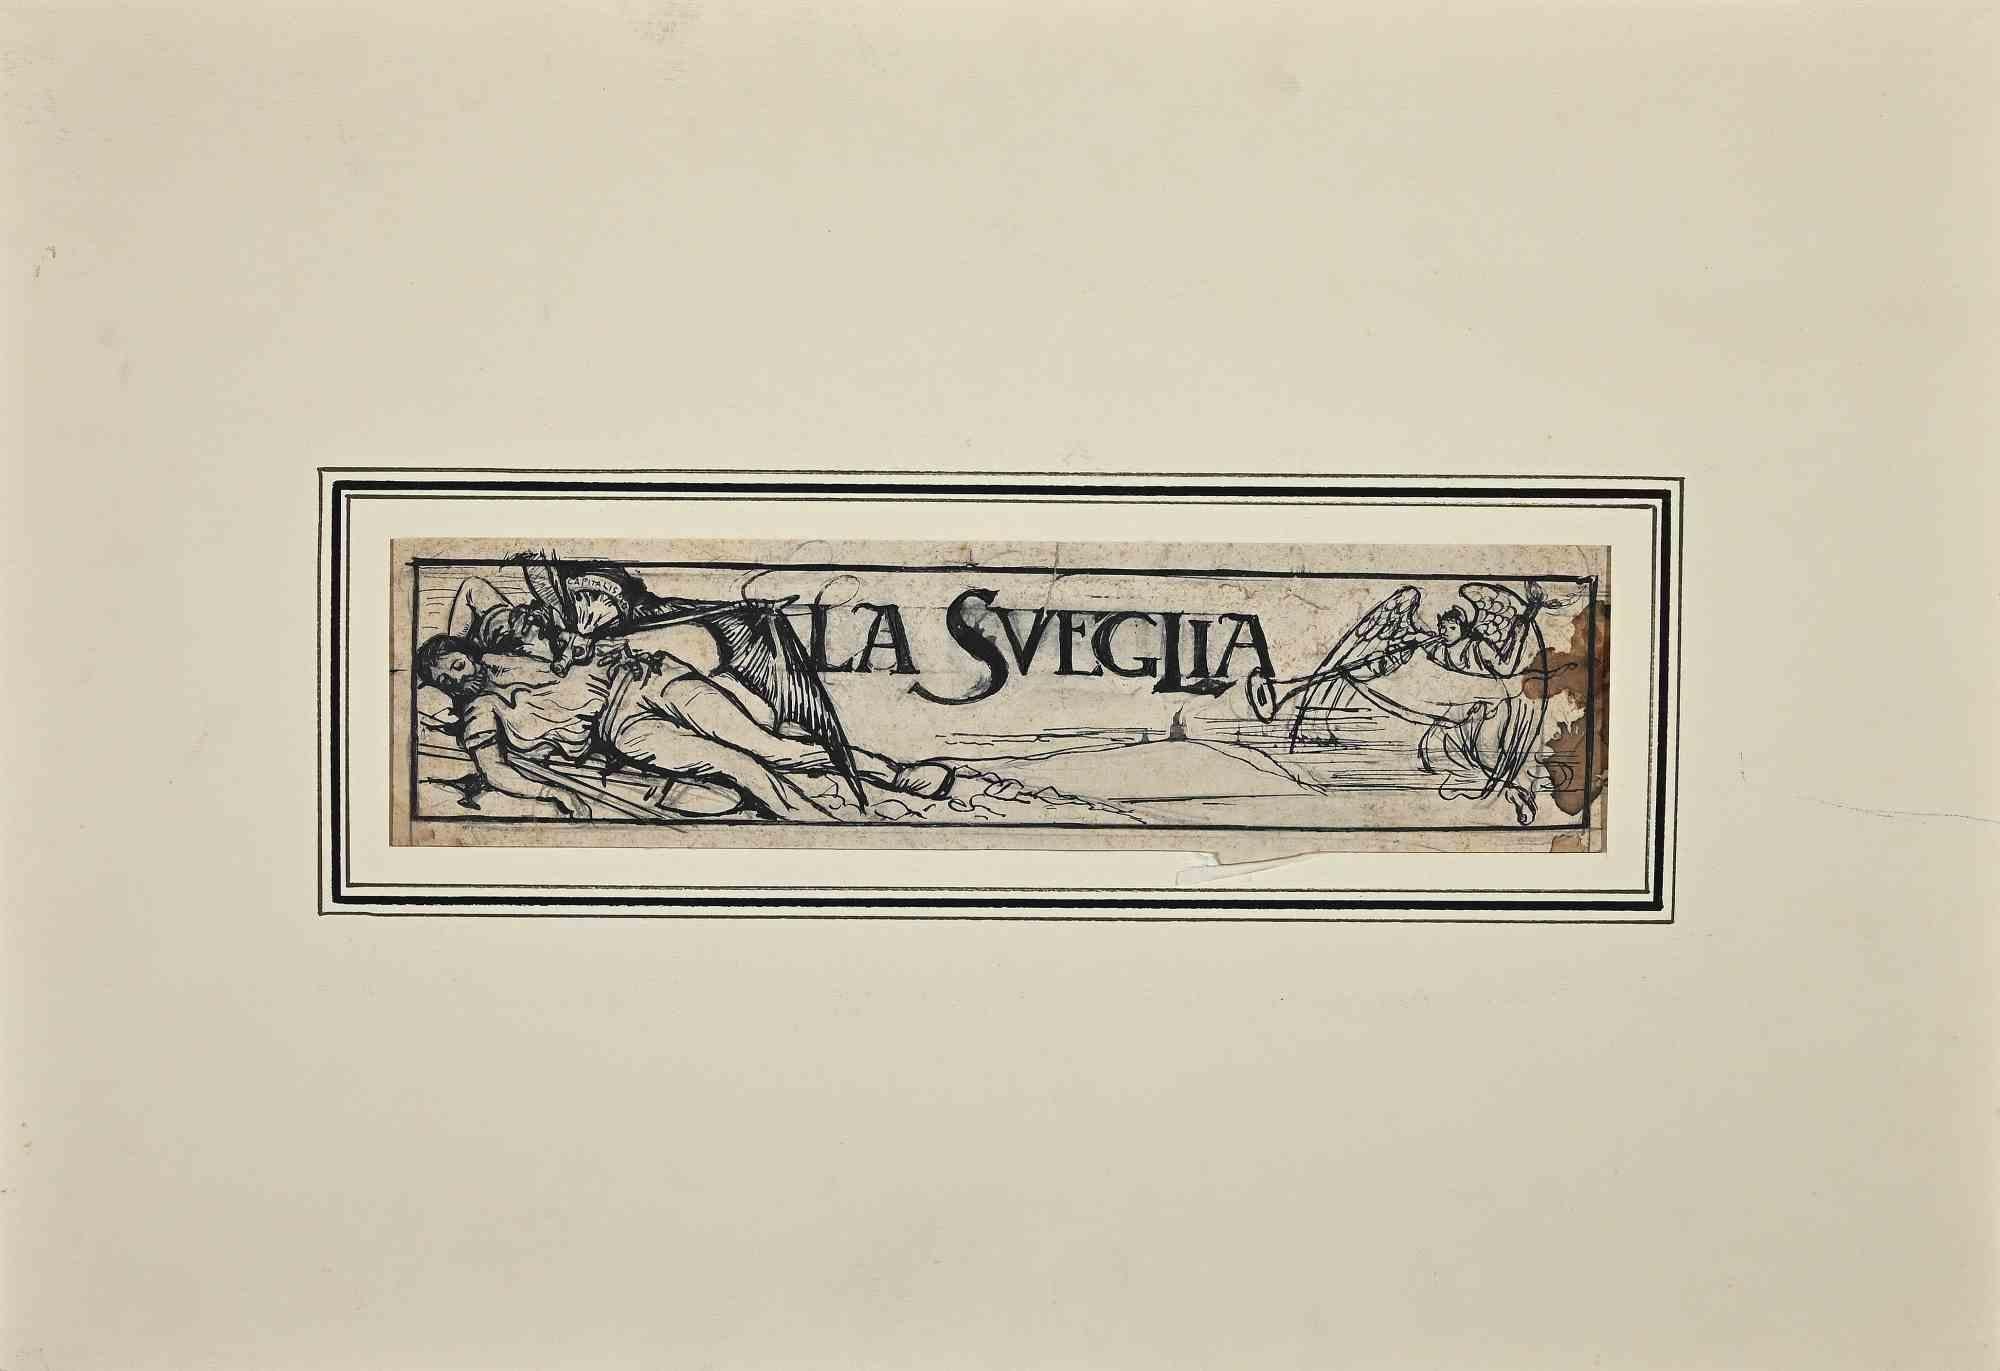 The wake up ist eine Originalzeichnung in Bleistift und Tusche von Gabriele Galantara aus dem Jahr 1910 für die Titelseite einer neuen Zeitung.

Der Titel lautet auf Italienisch "La Sveglia".

Der Erhaltungszustand des Kunstwerks ist gut und